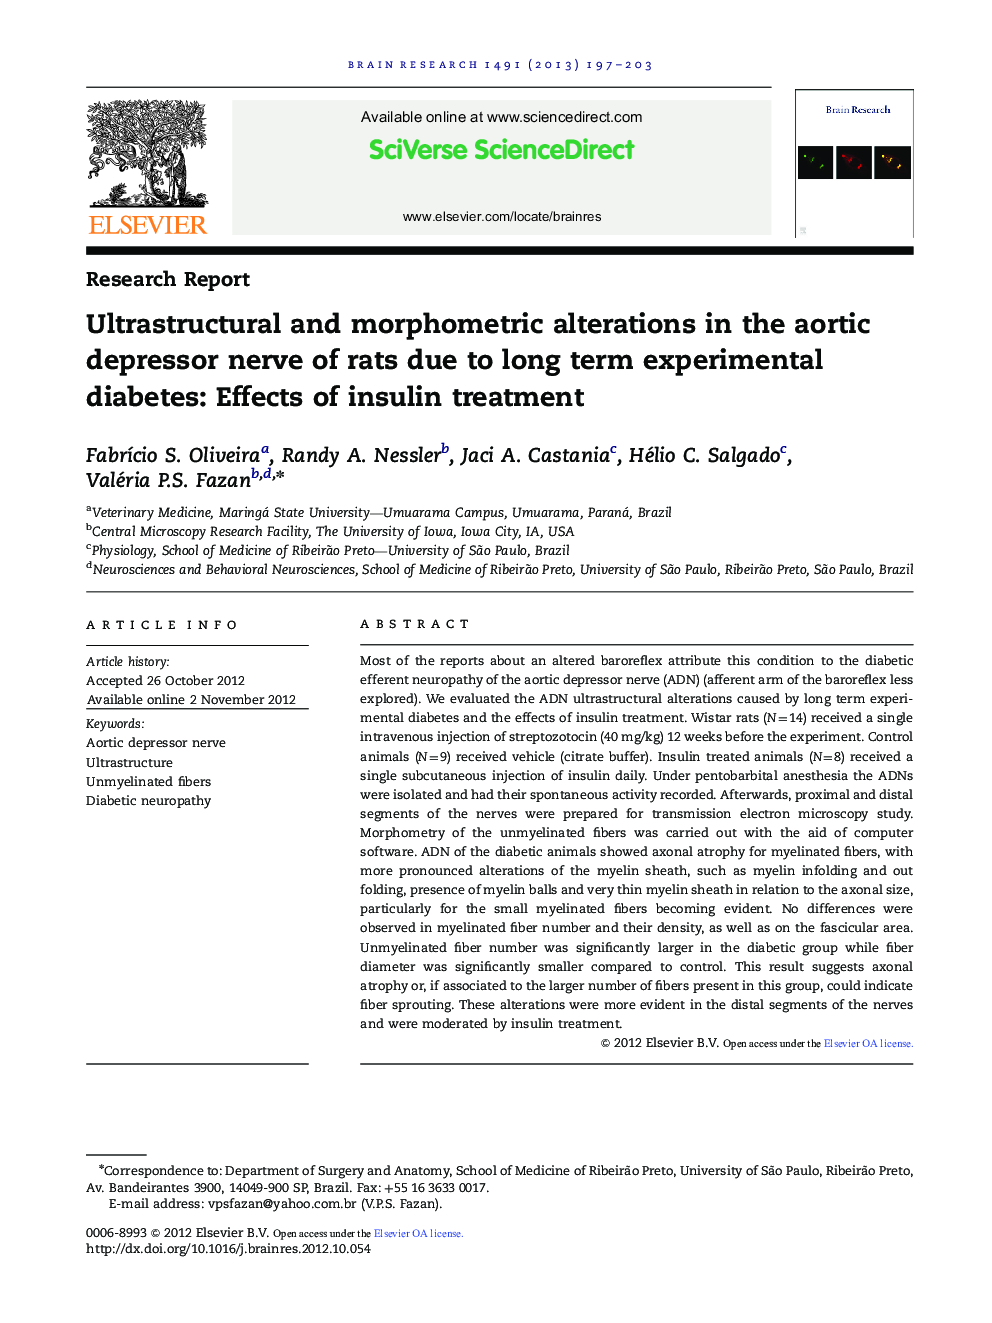 گزارش تحقیق تغییرات ساختار و مورفومتری در عصب افسردگی آئورت موش صحرایی به دلیل دیابت تجربی طولانی مدت: اثرات درمان انسولین 